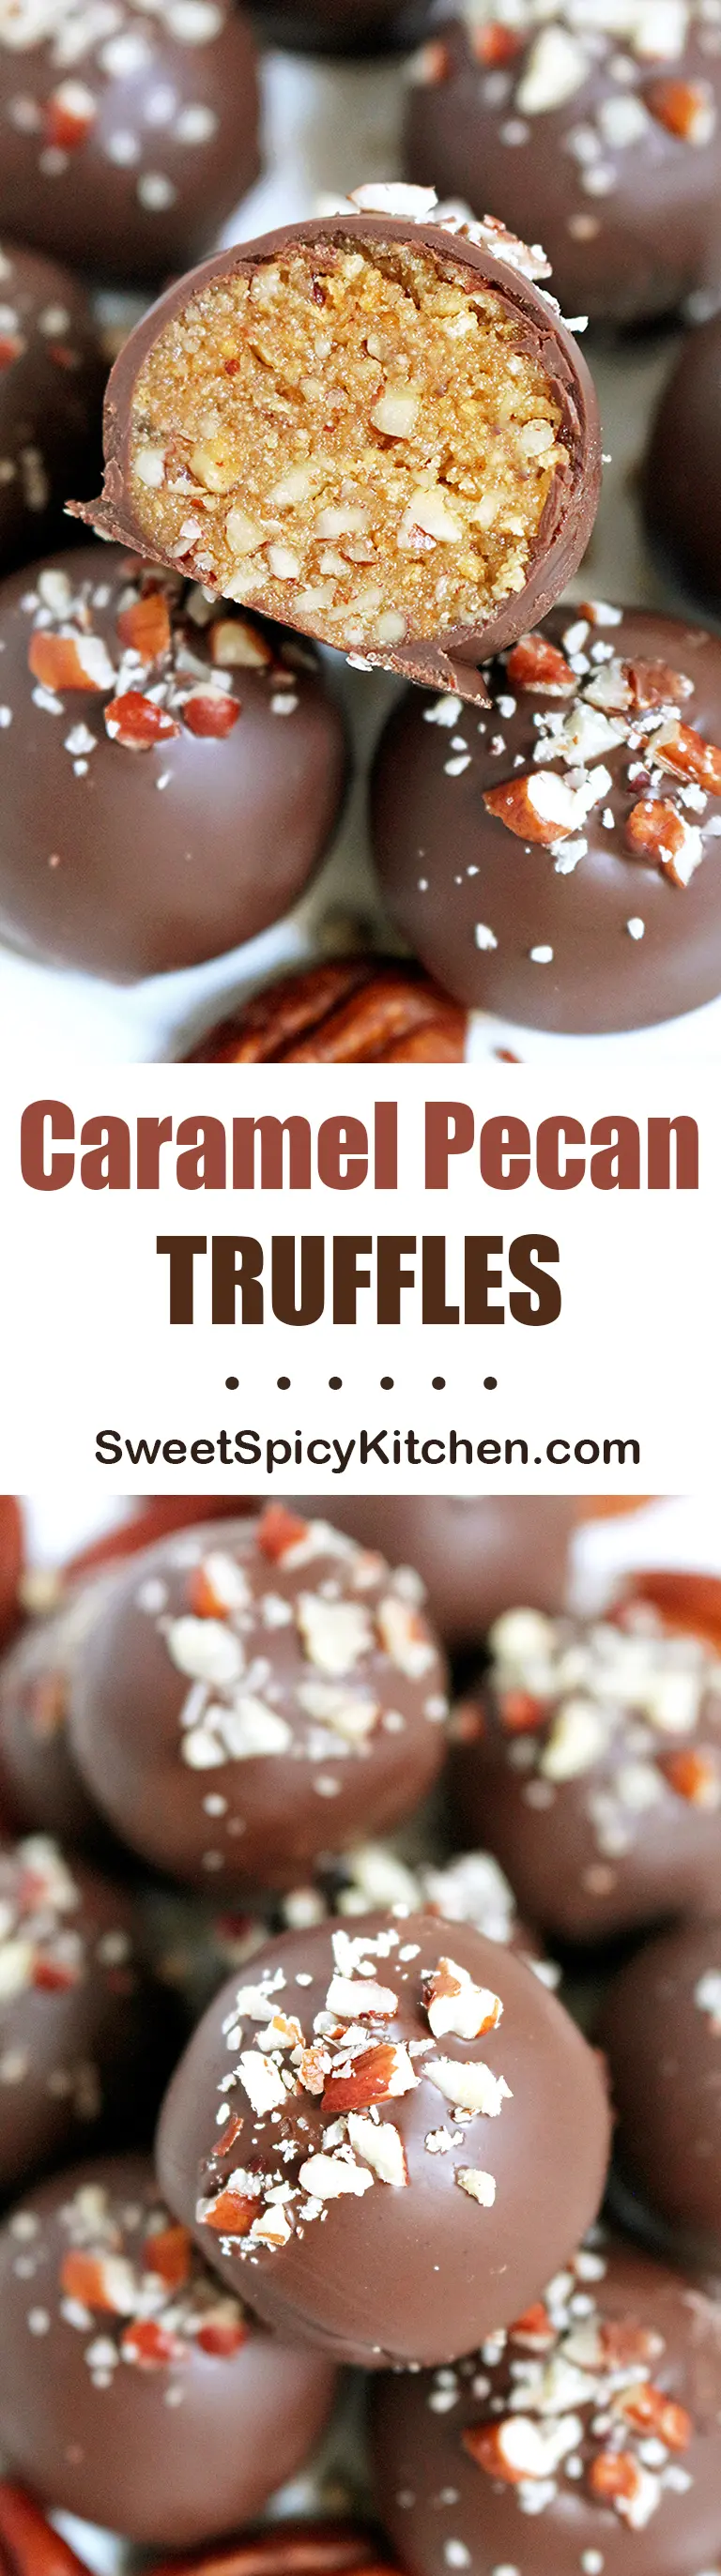 Caramel Pecan Truffles